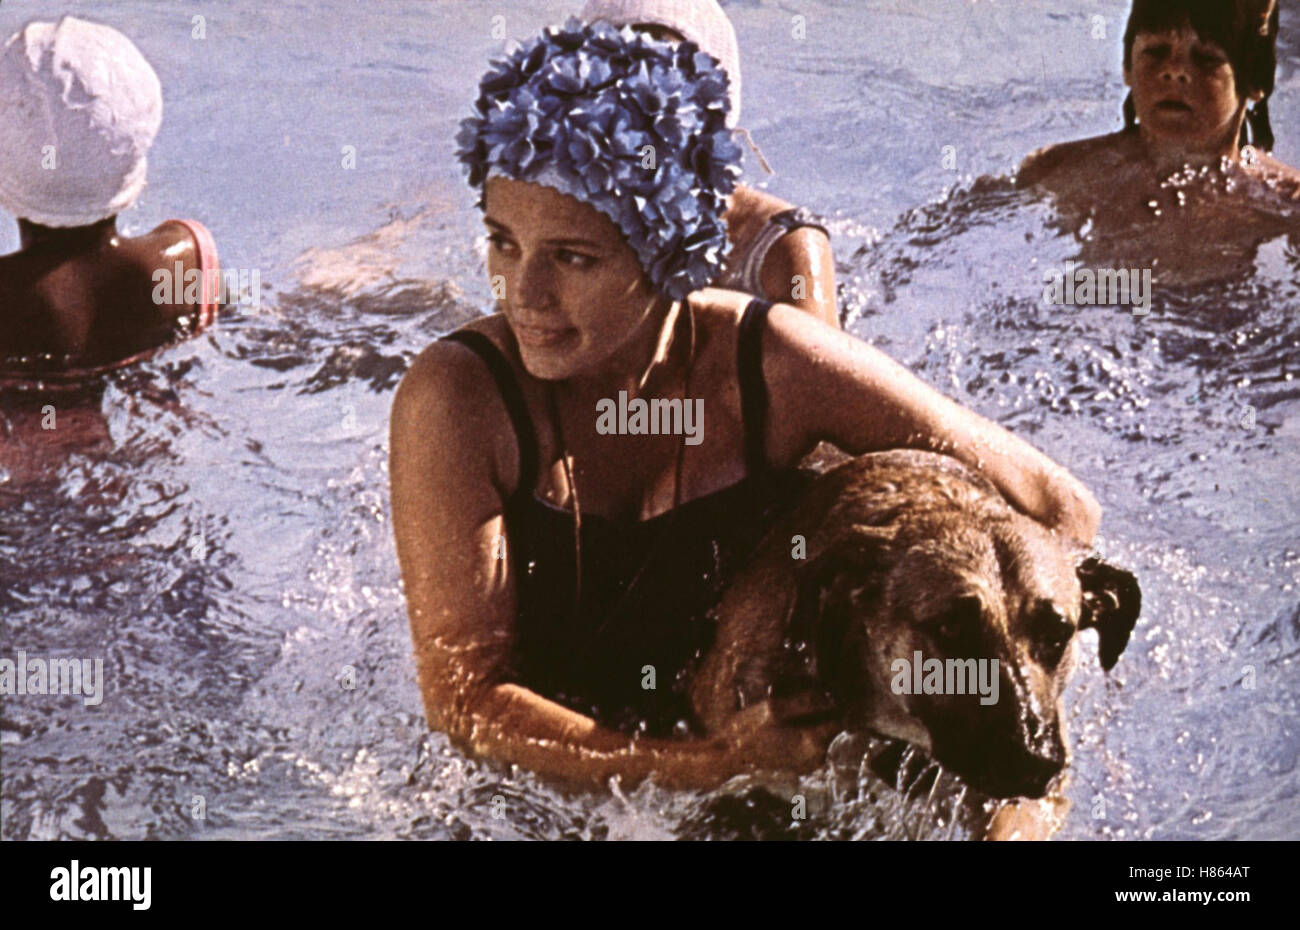 Mein Herz braucht Liebe, (ONE IS A LONELY NUMBER) USA 1972, Regie: Mel Stuart, TRISH VAN DEVERE, Key: Baden, Badekappe, Hund, Schäferhund, Wasser Stock Photo